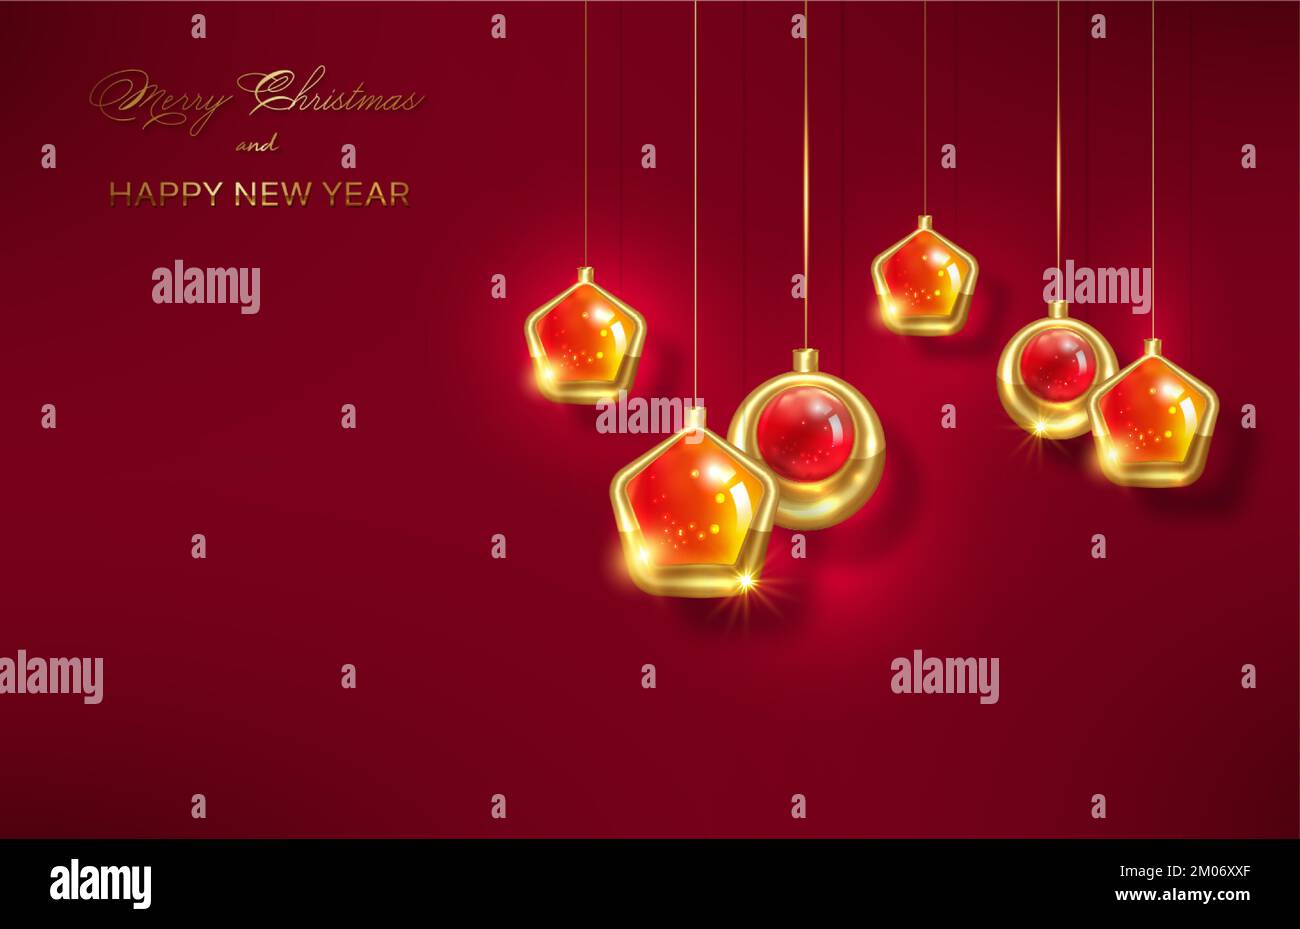 Weihnachts-Luxus-Weihnachtsbanner mit handgeschriebenen goldenen Frohe Weihnachten und Frohe Neujahrsgrüße und goldenen Weihnachtskugeln. Vektorgrafik Stock Vektor